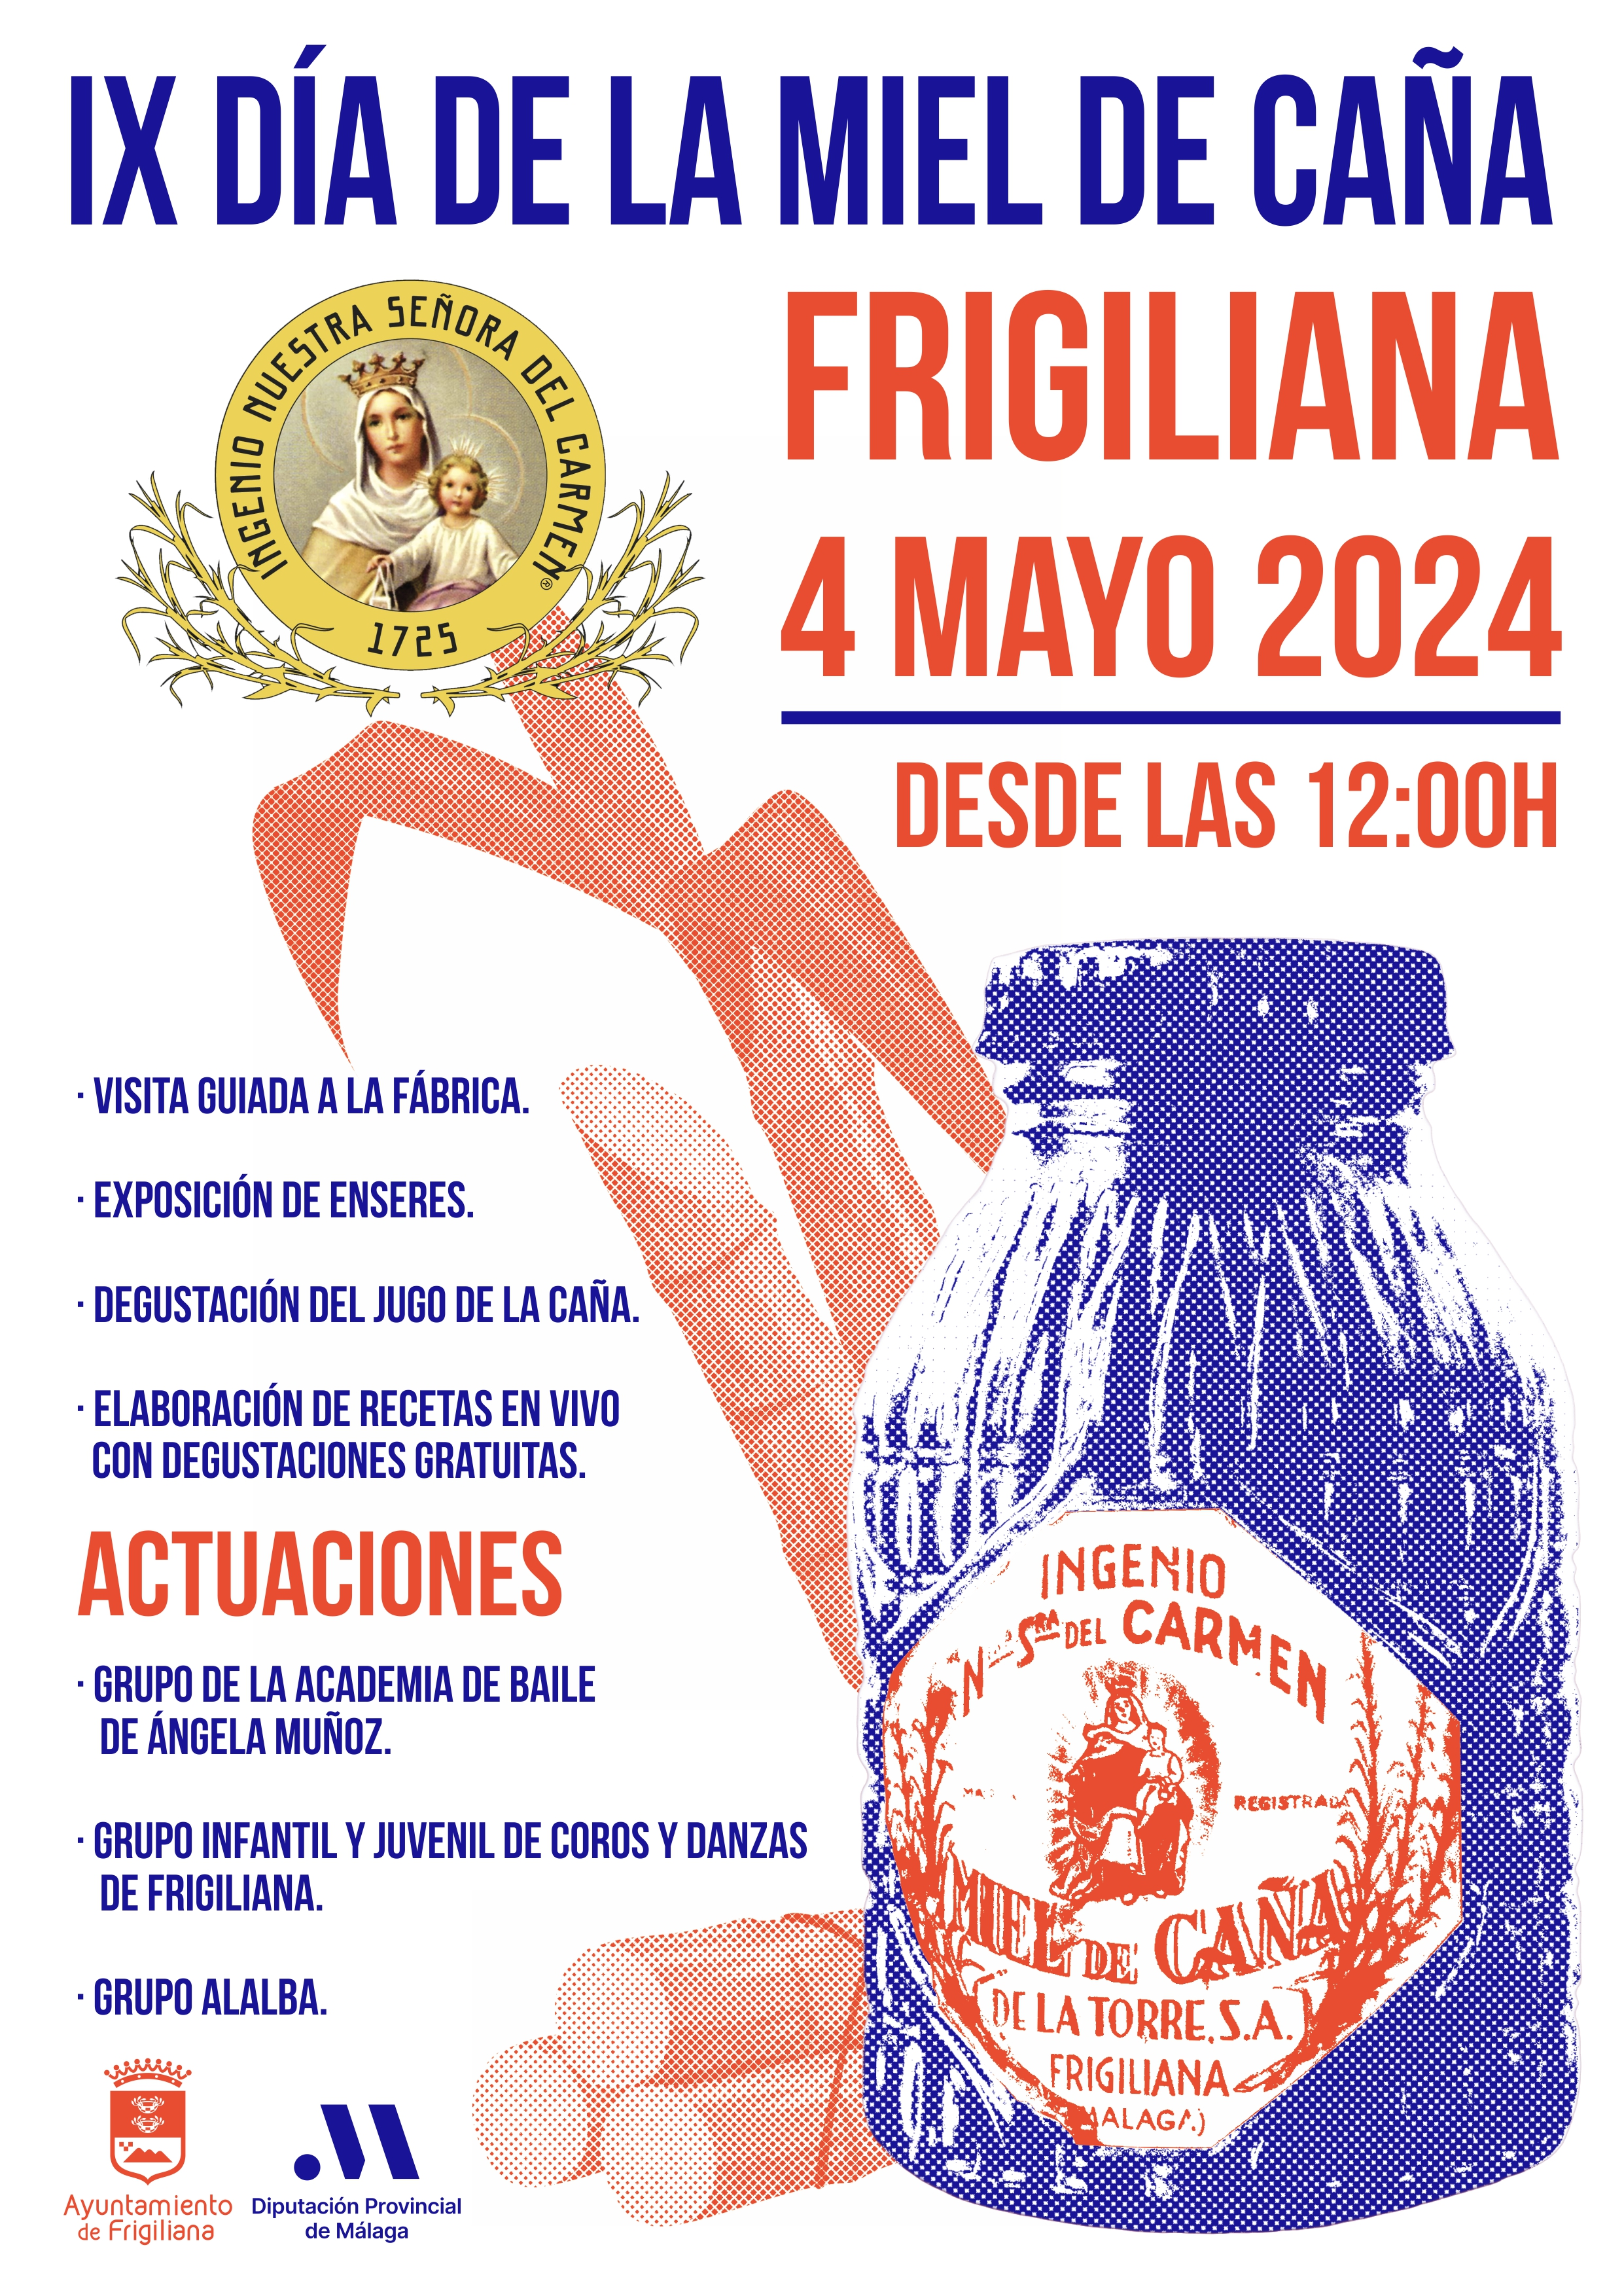 Frigiliana IX Día de la Miel de Caña 4 de mayo 2024